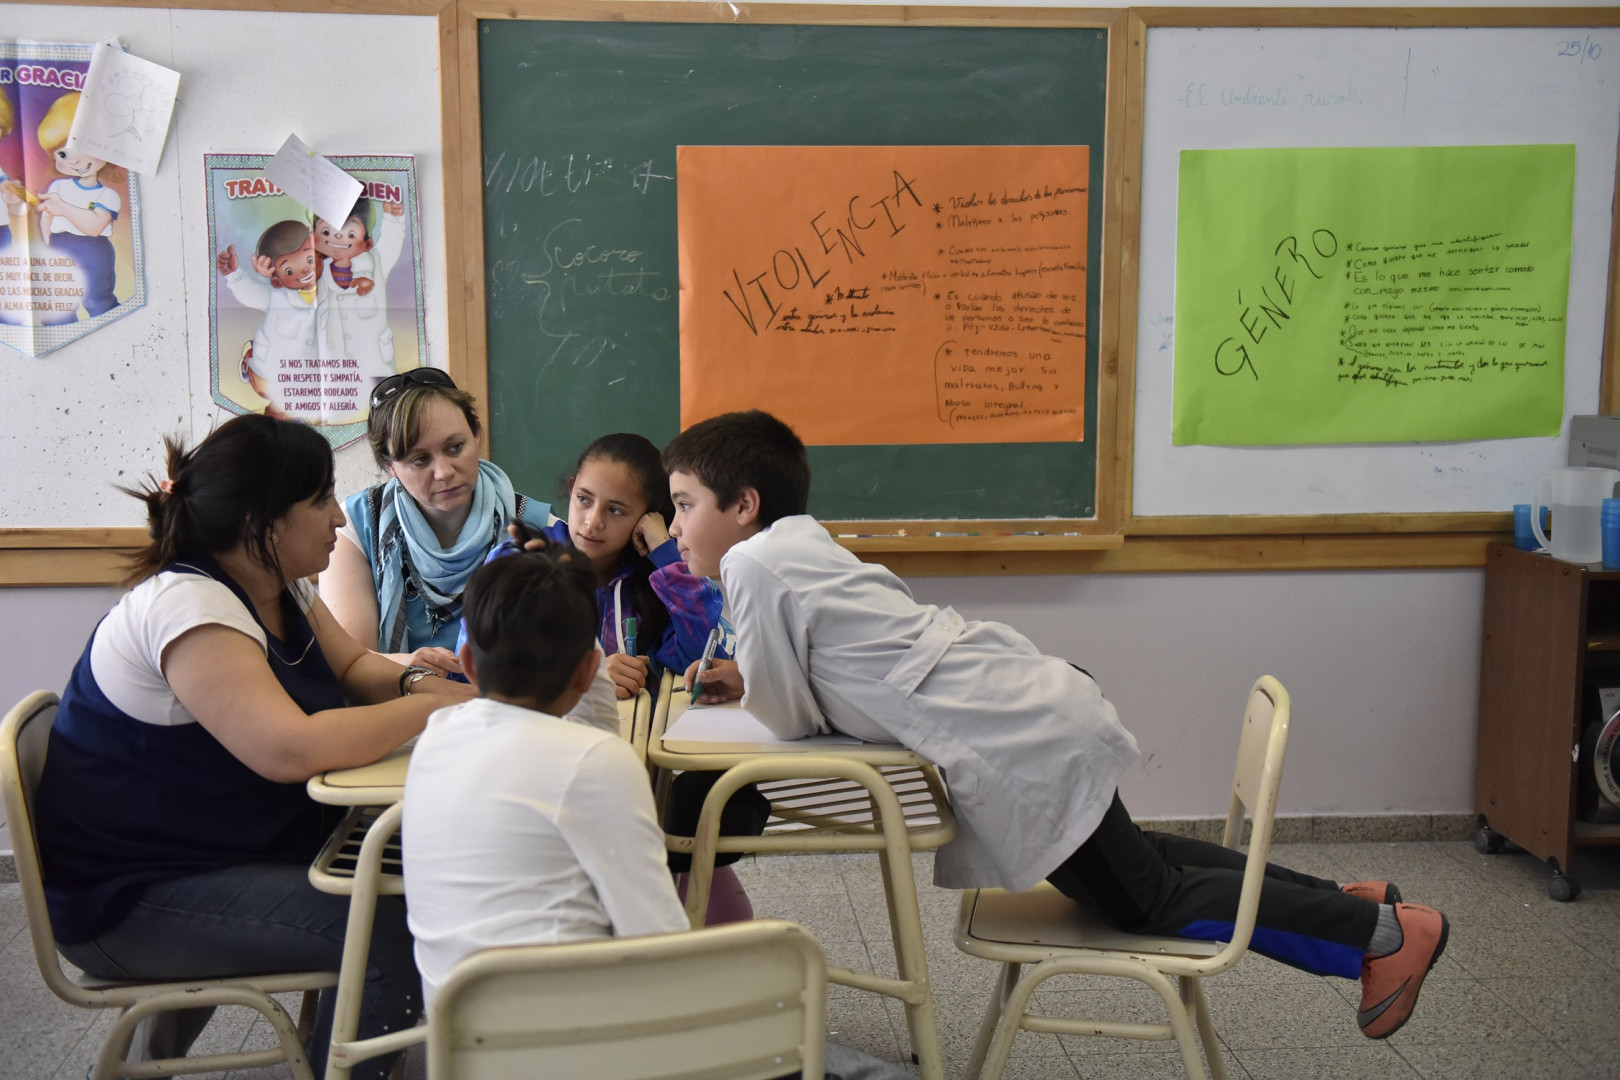 El 98 De Las Escuelas Primarias Trabajan Contenidos De Educación Sexual Integral Argentinagobar 3831